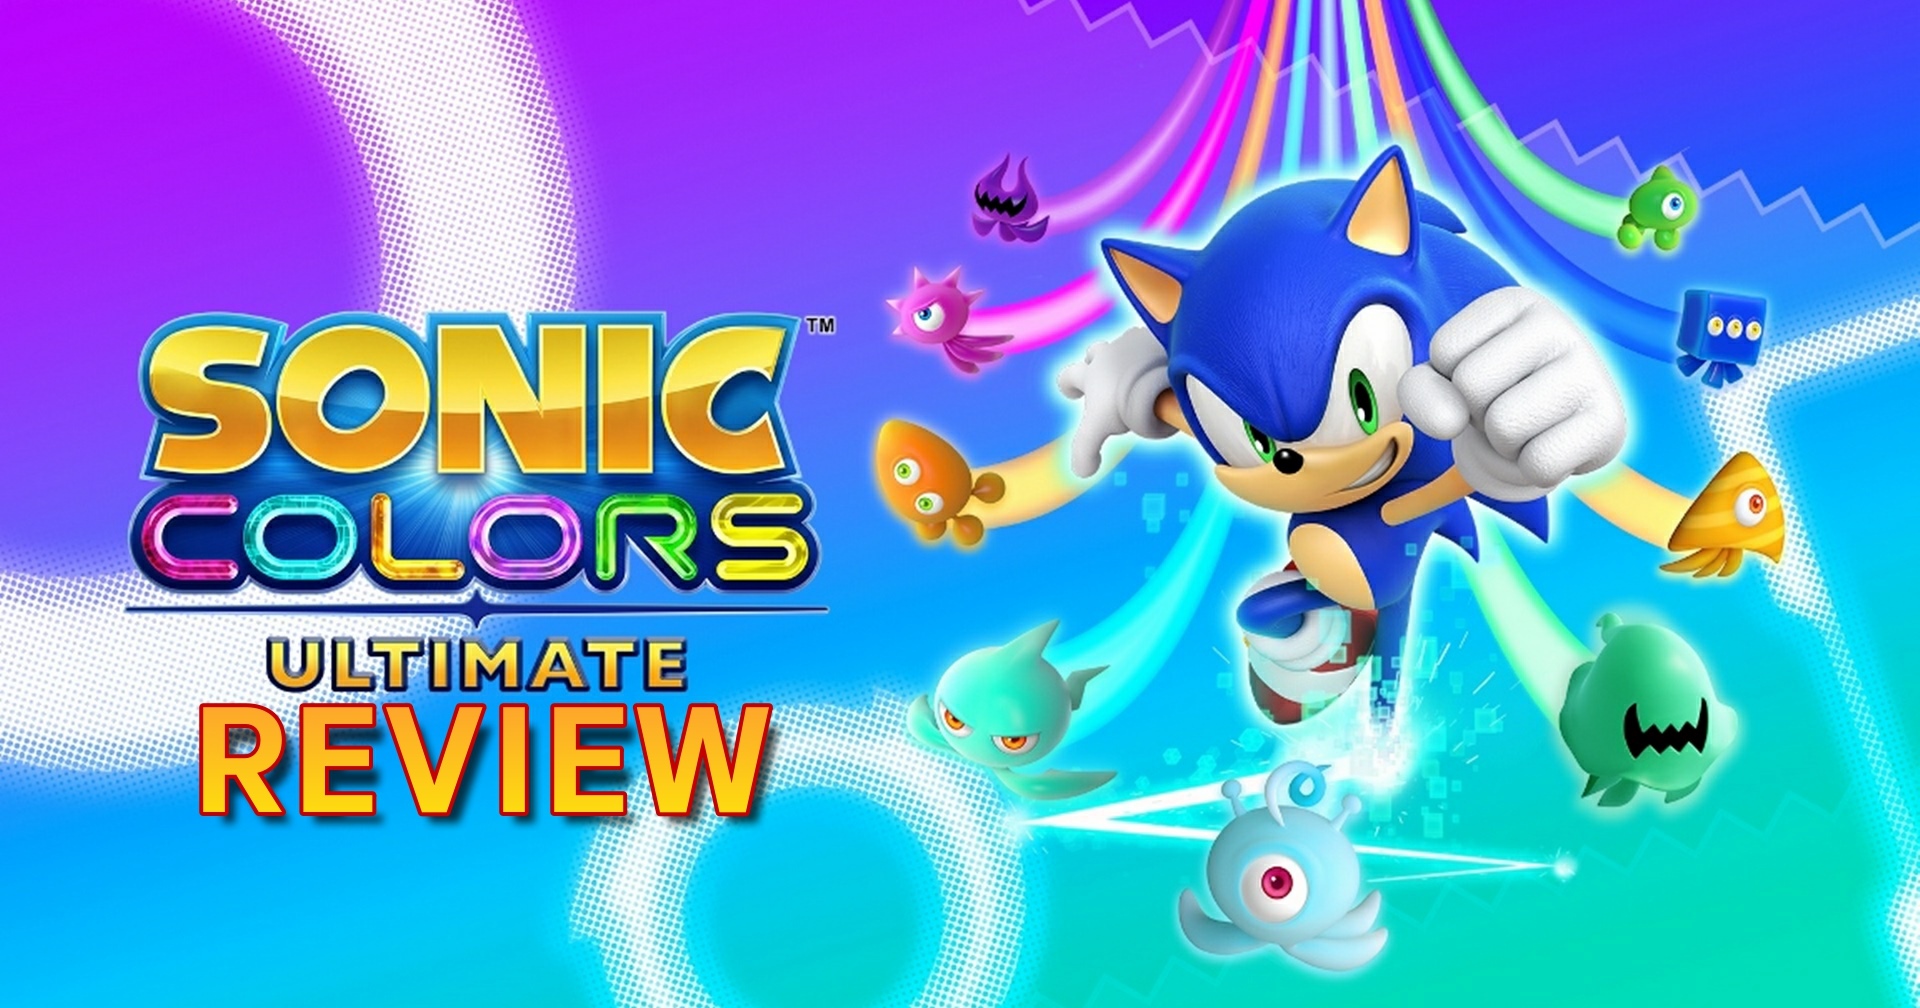 รีวิวเกม Sonic Colors Ultimate เม่นสายฟ้ากับพลังเอเลียนหลากสี